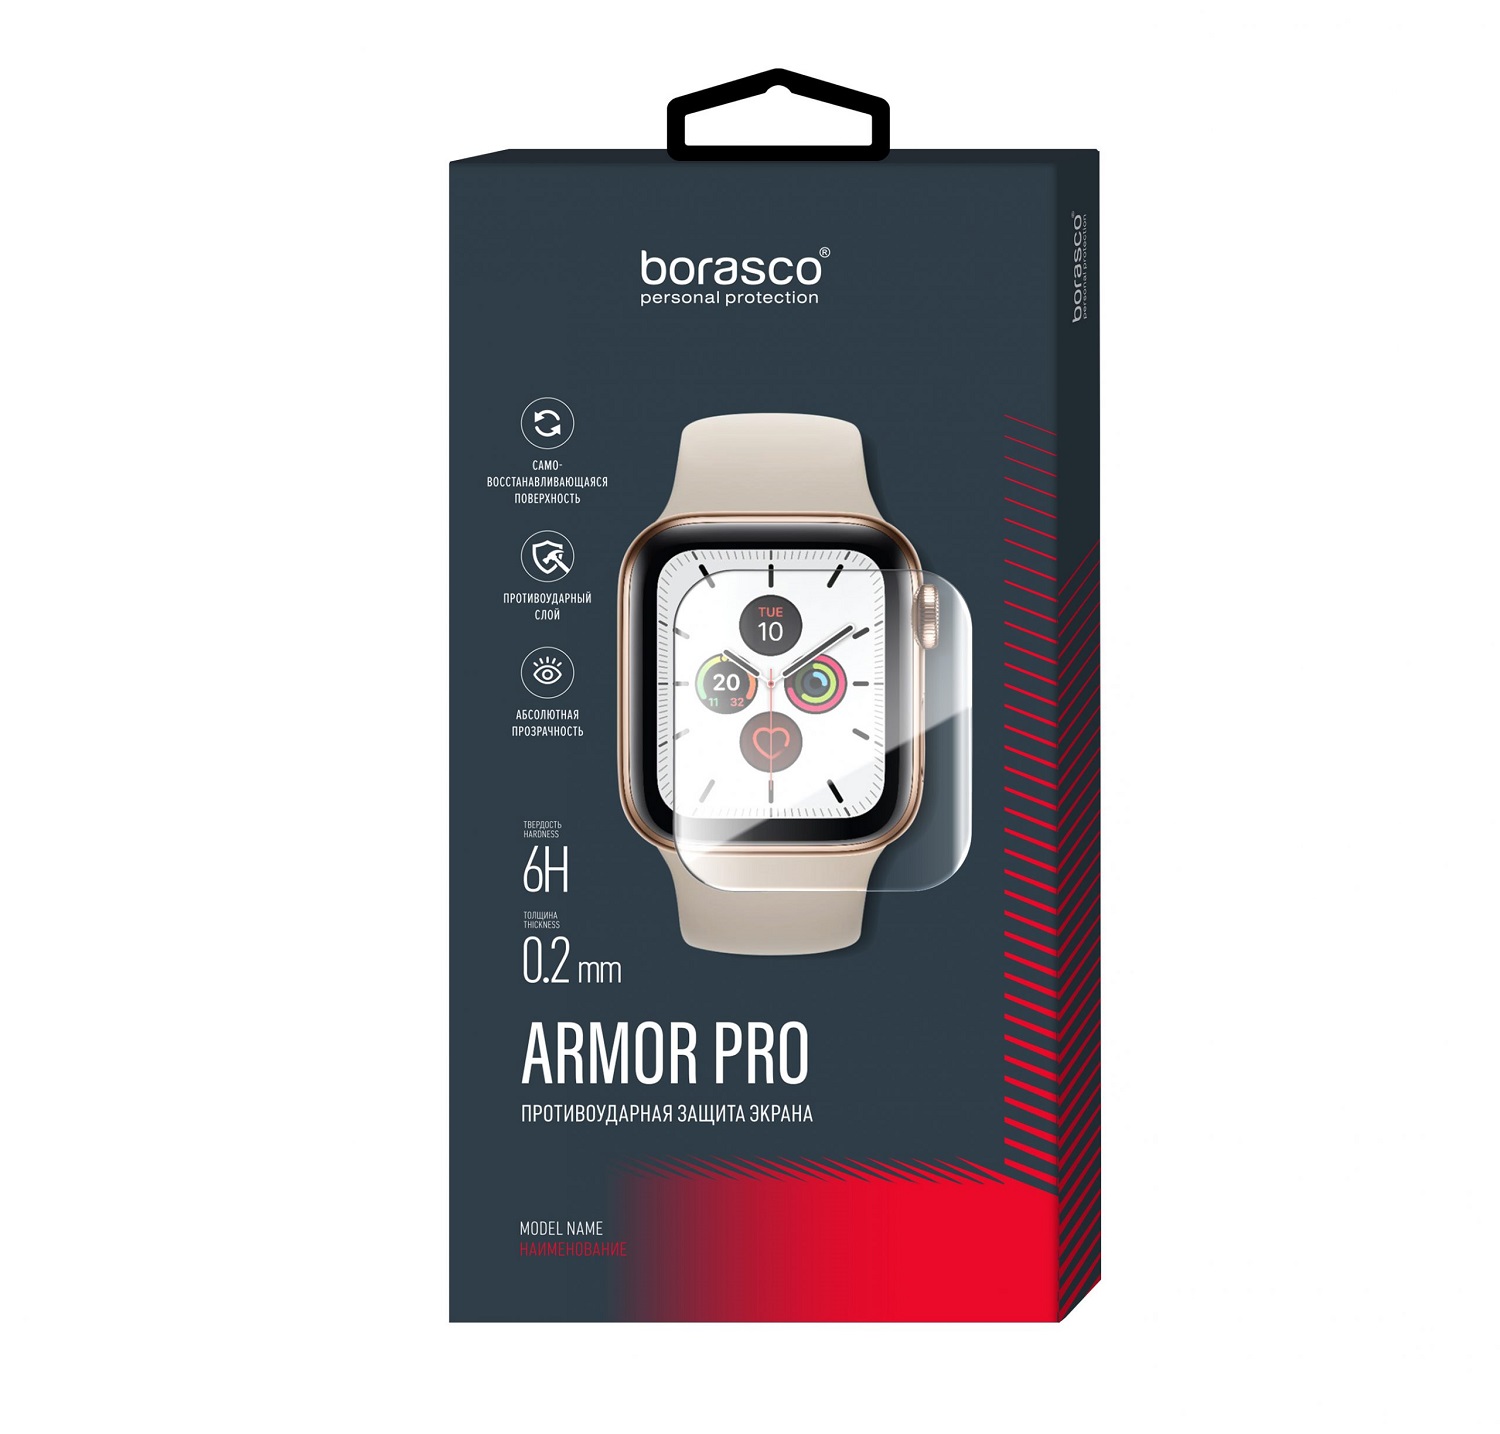 Защита экрана BoraSCO Armor Pro для Xiaomi Mi band 2 защита экрана borasco armor pro для honor band 2 матовый